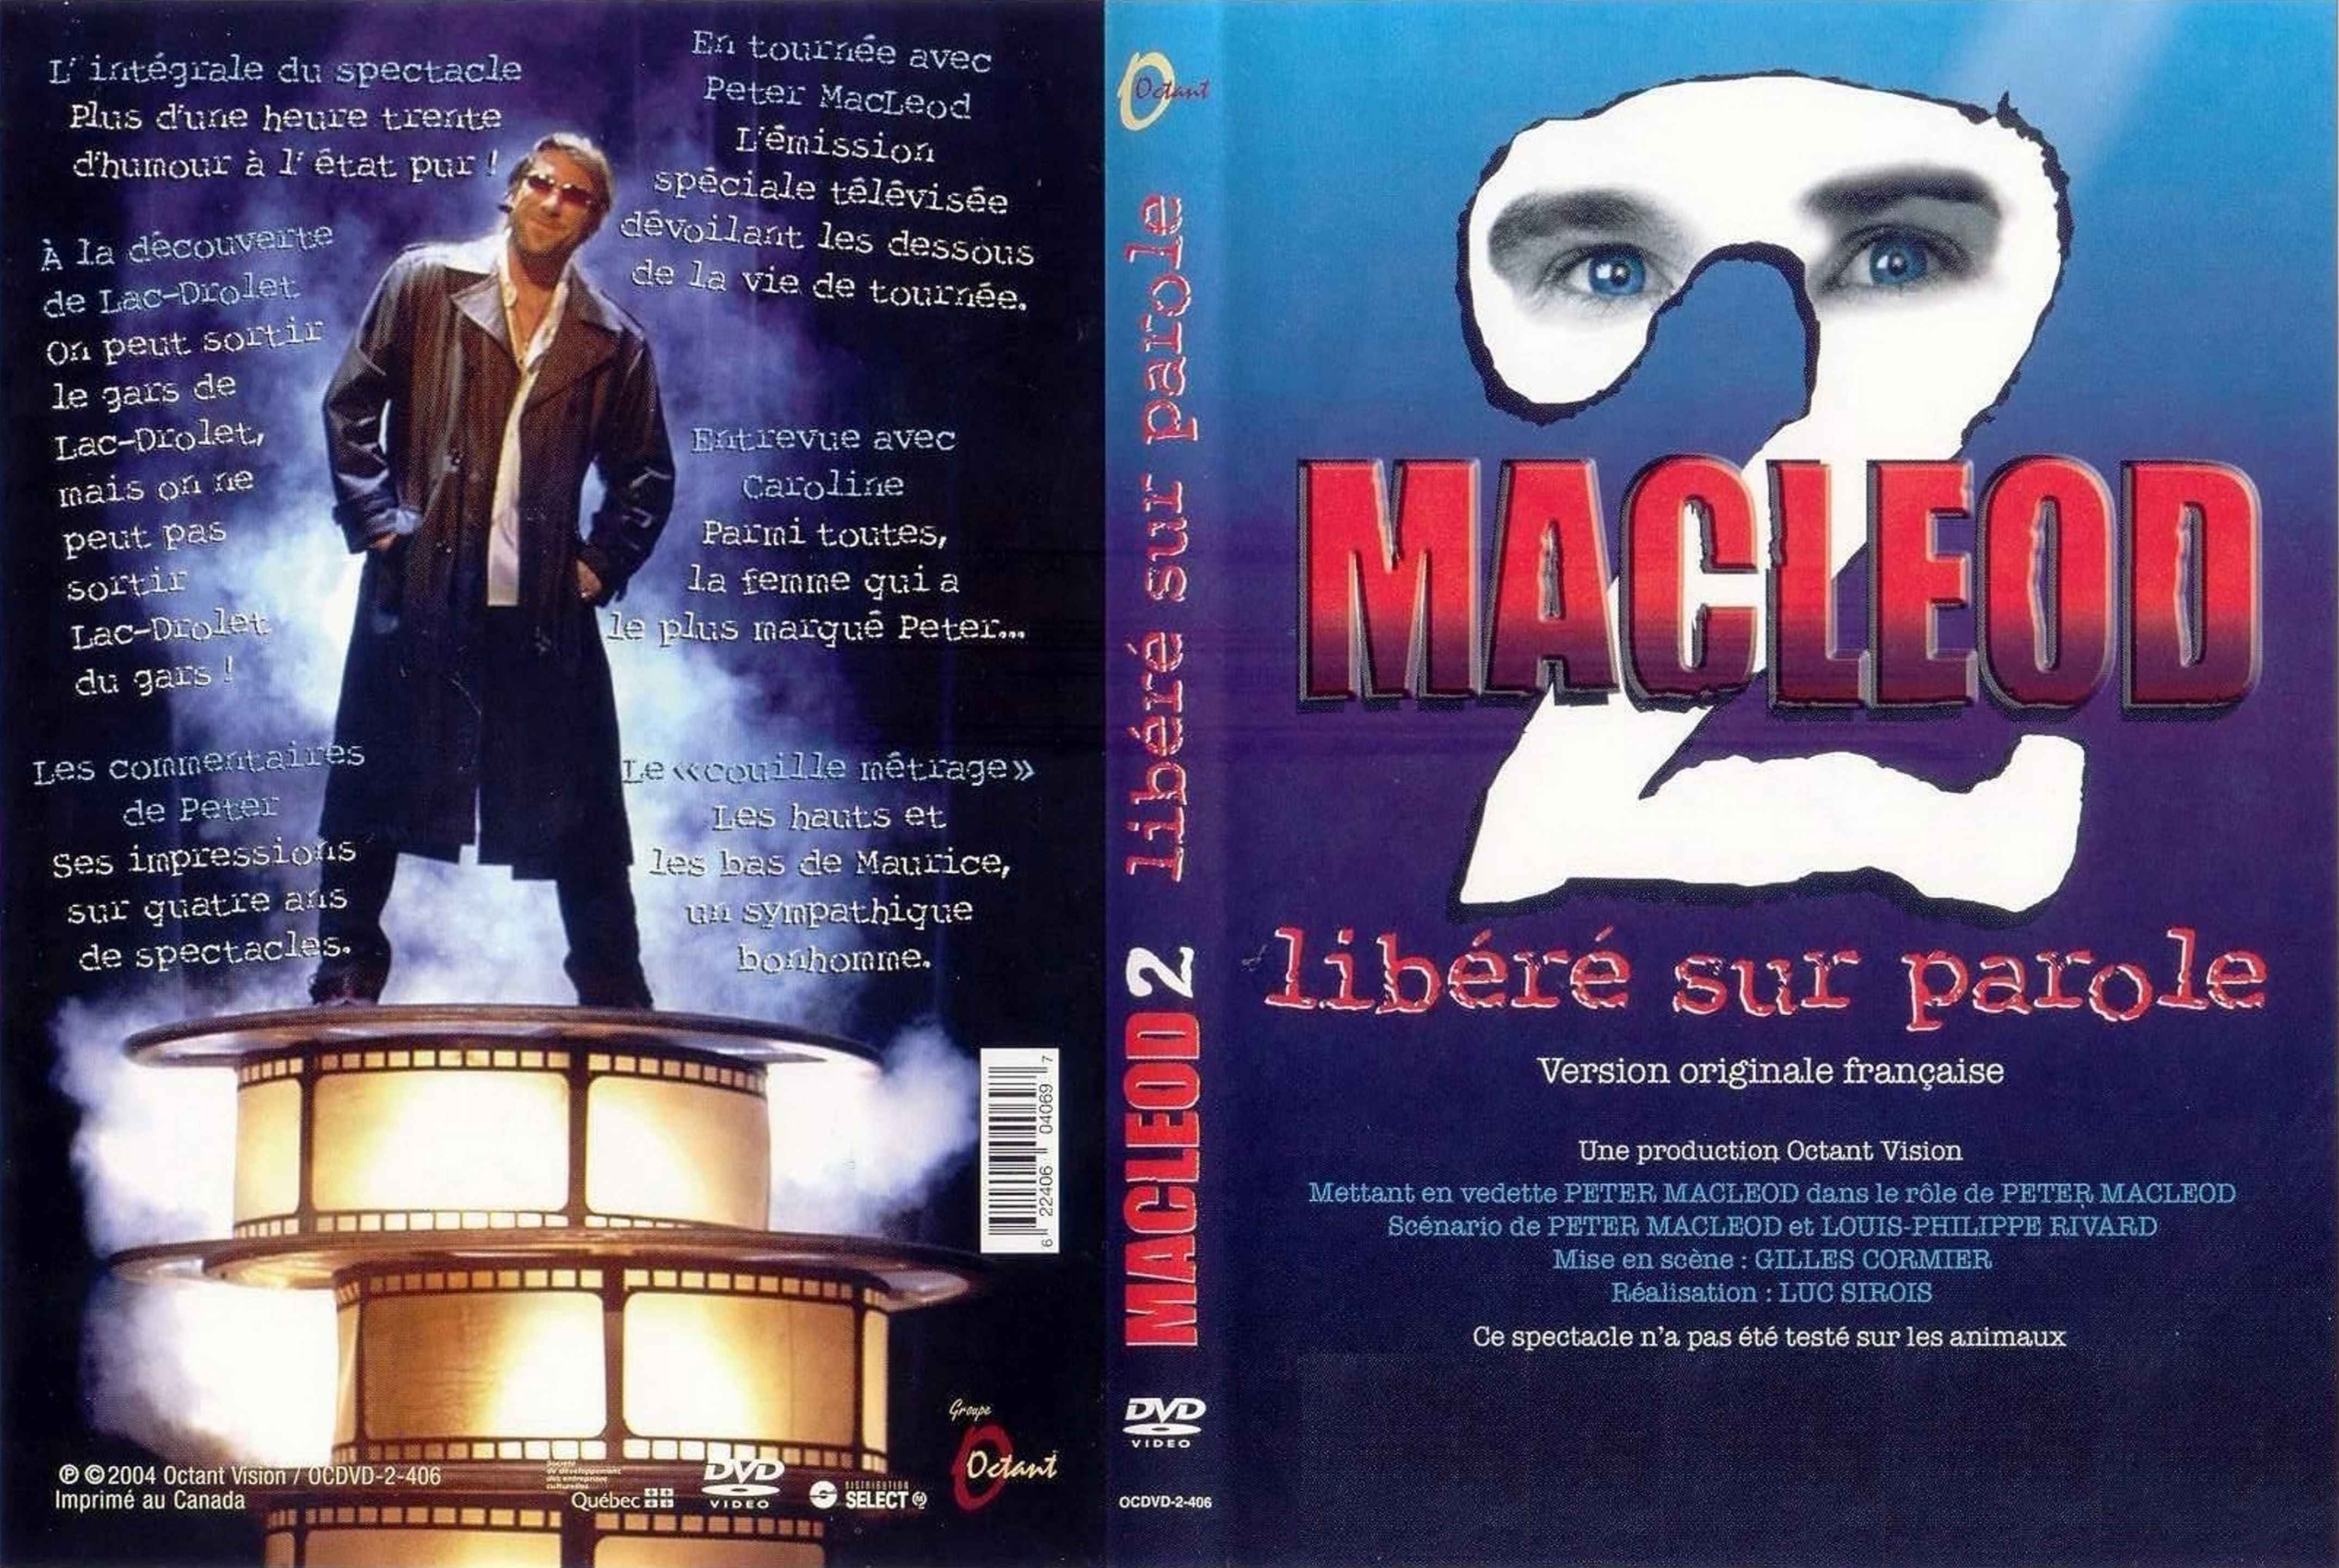 Jaquette DVD Macleod 2 libr sur parole